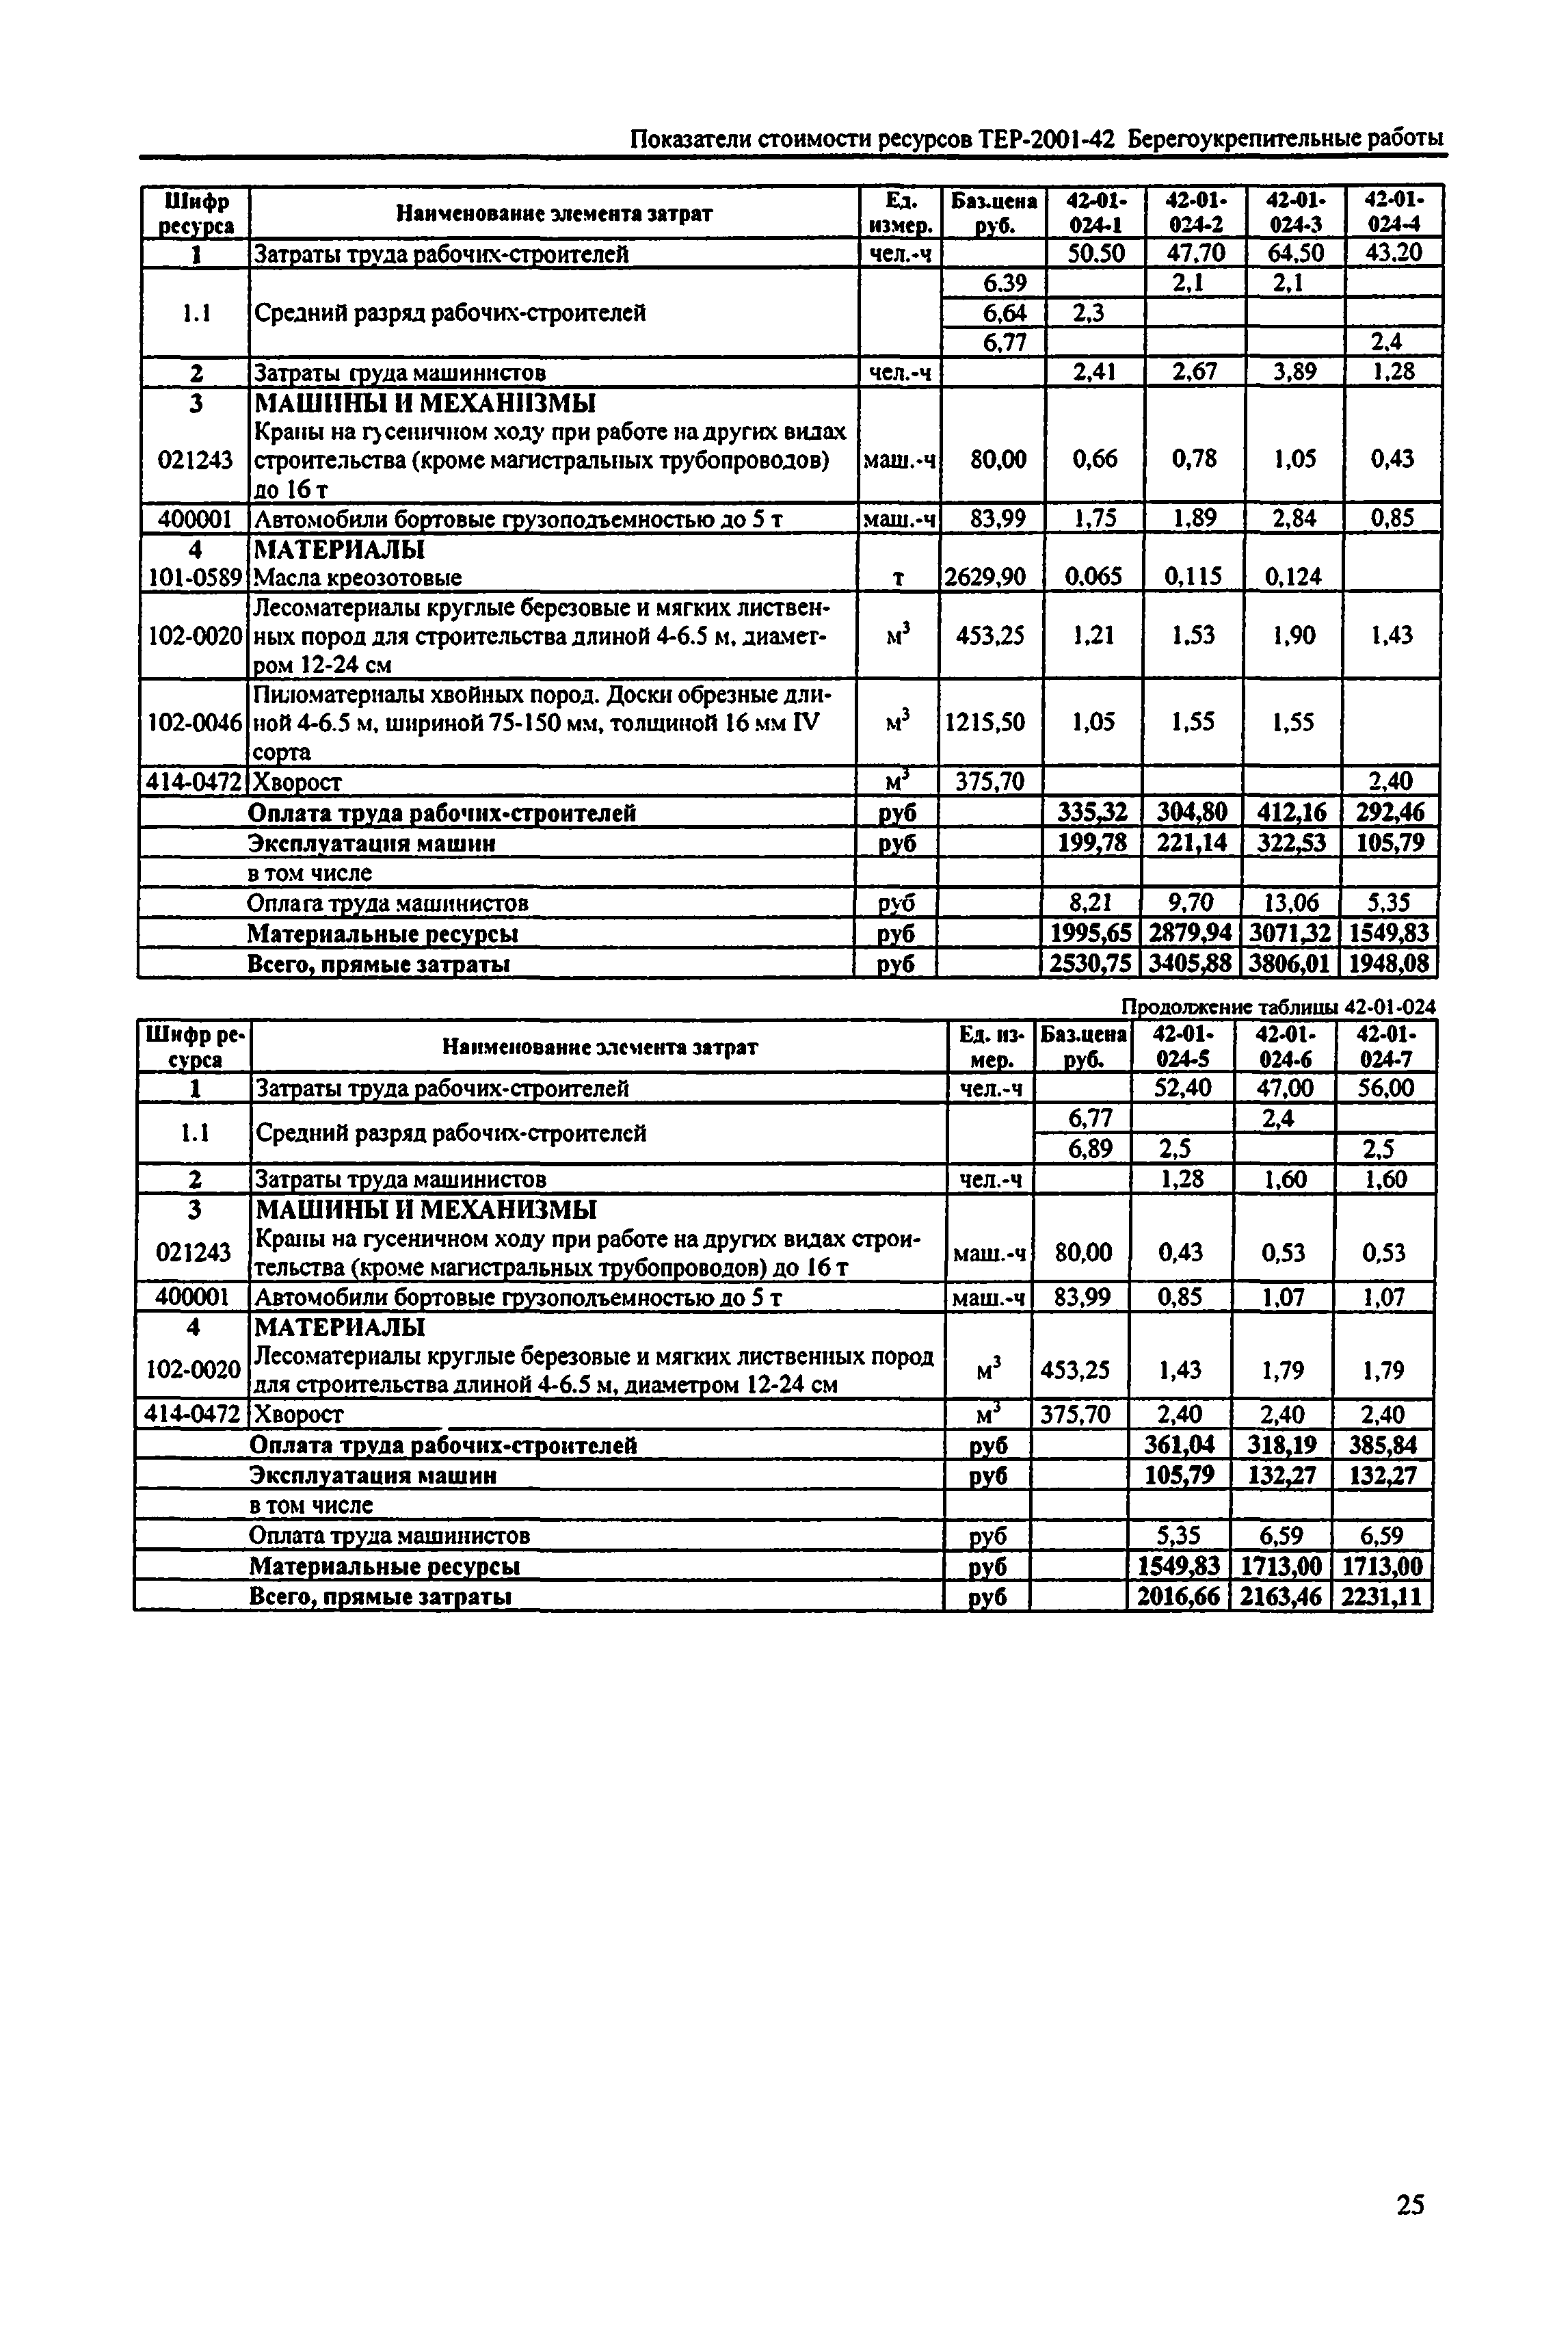 Справочное пособие к ТЕР 81-02-42-2001